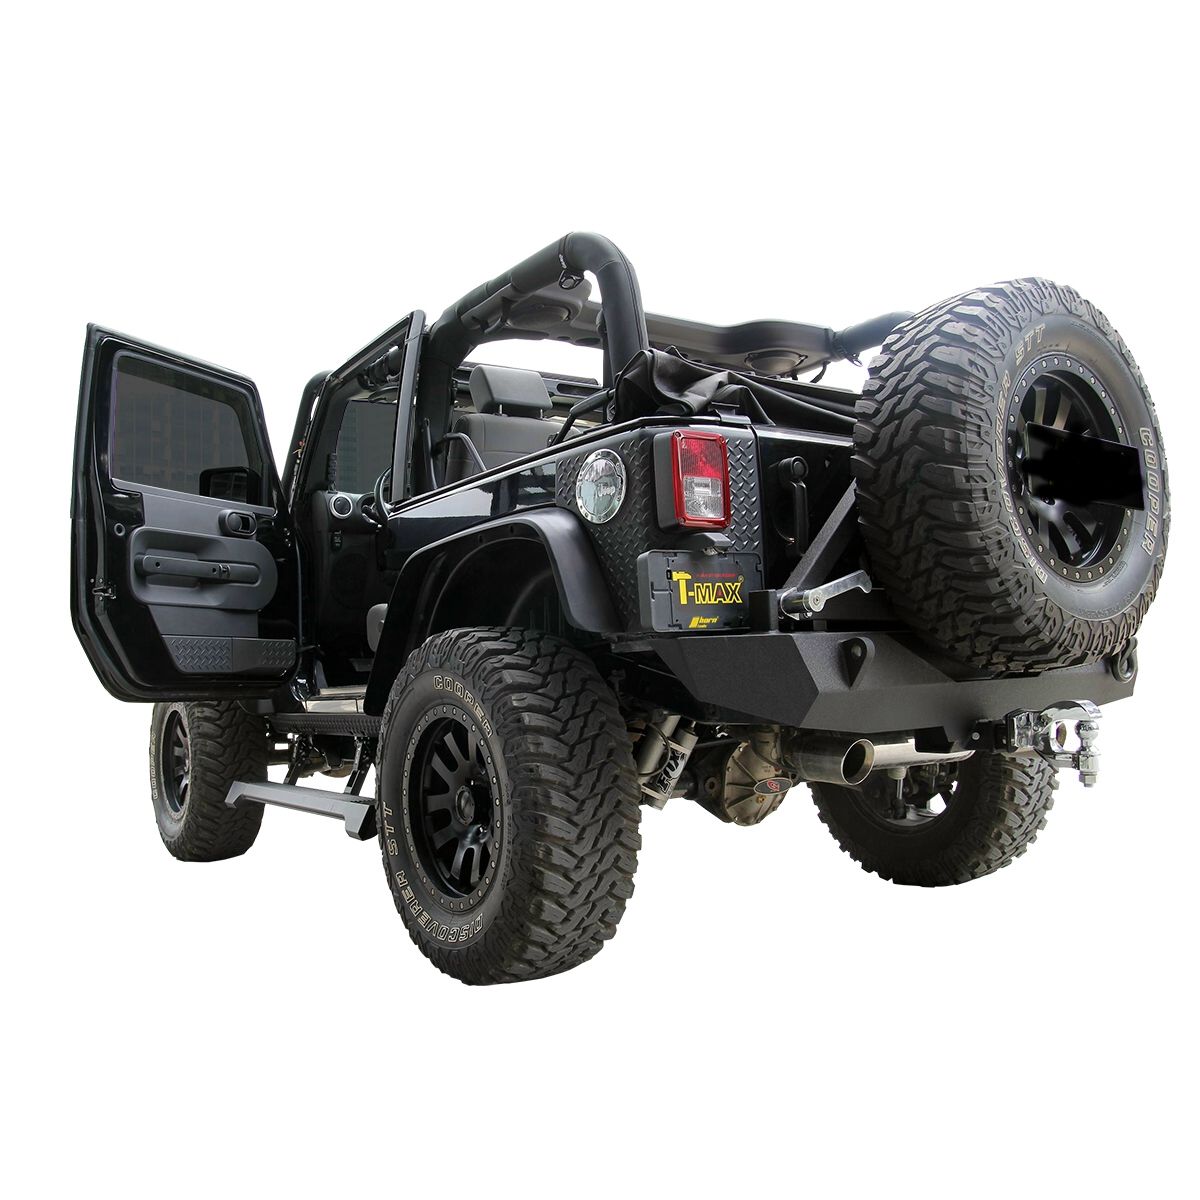 Jeep Fahrwerk - Jeep zubehör - Jeep JK - ATV/UTV Quad Elektrische